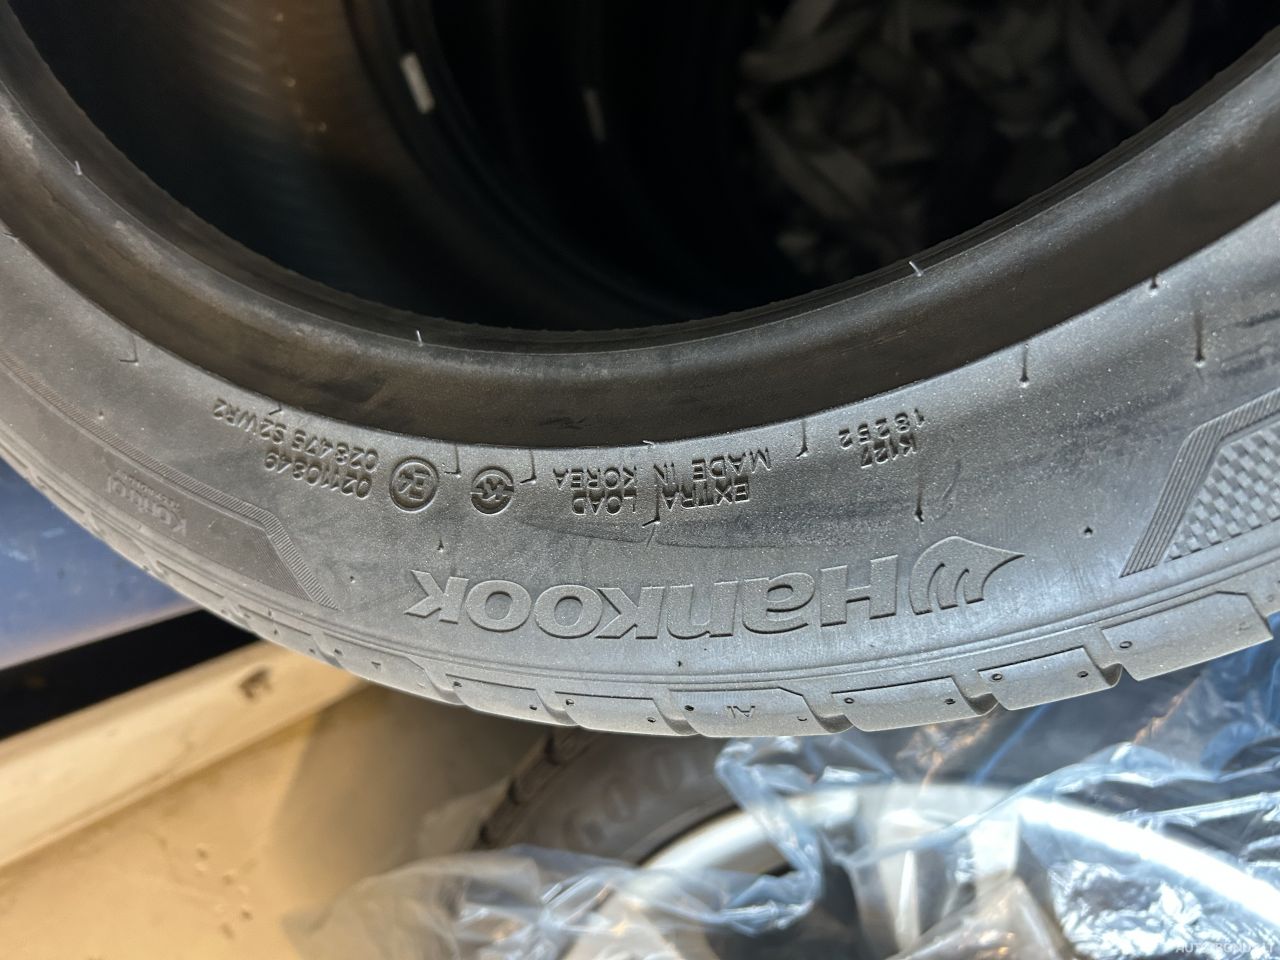 Hankook summer tyres